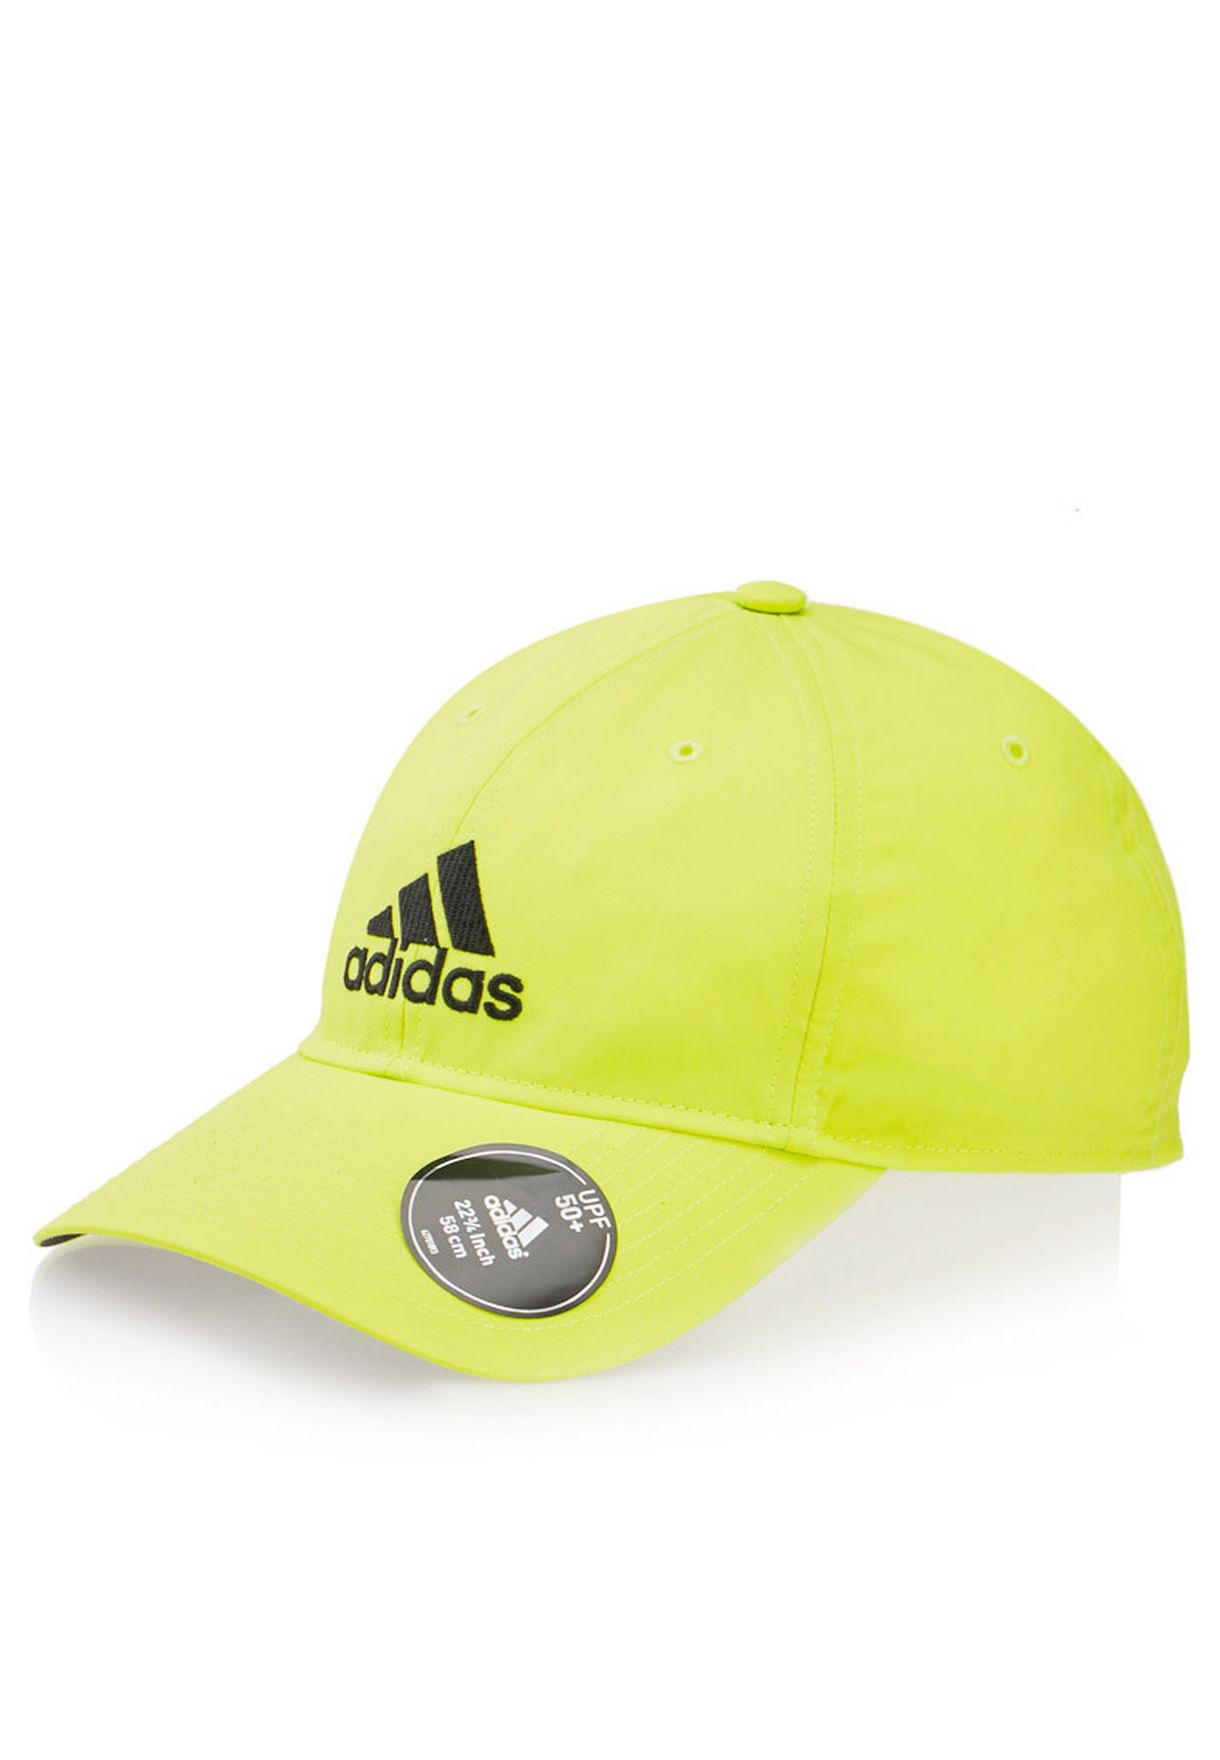 adidas neon hat